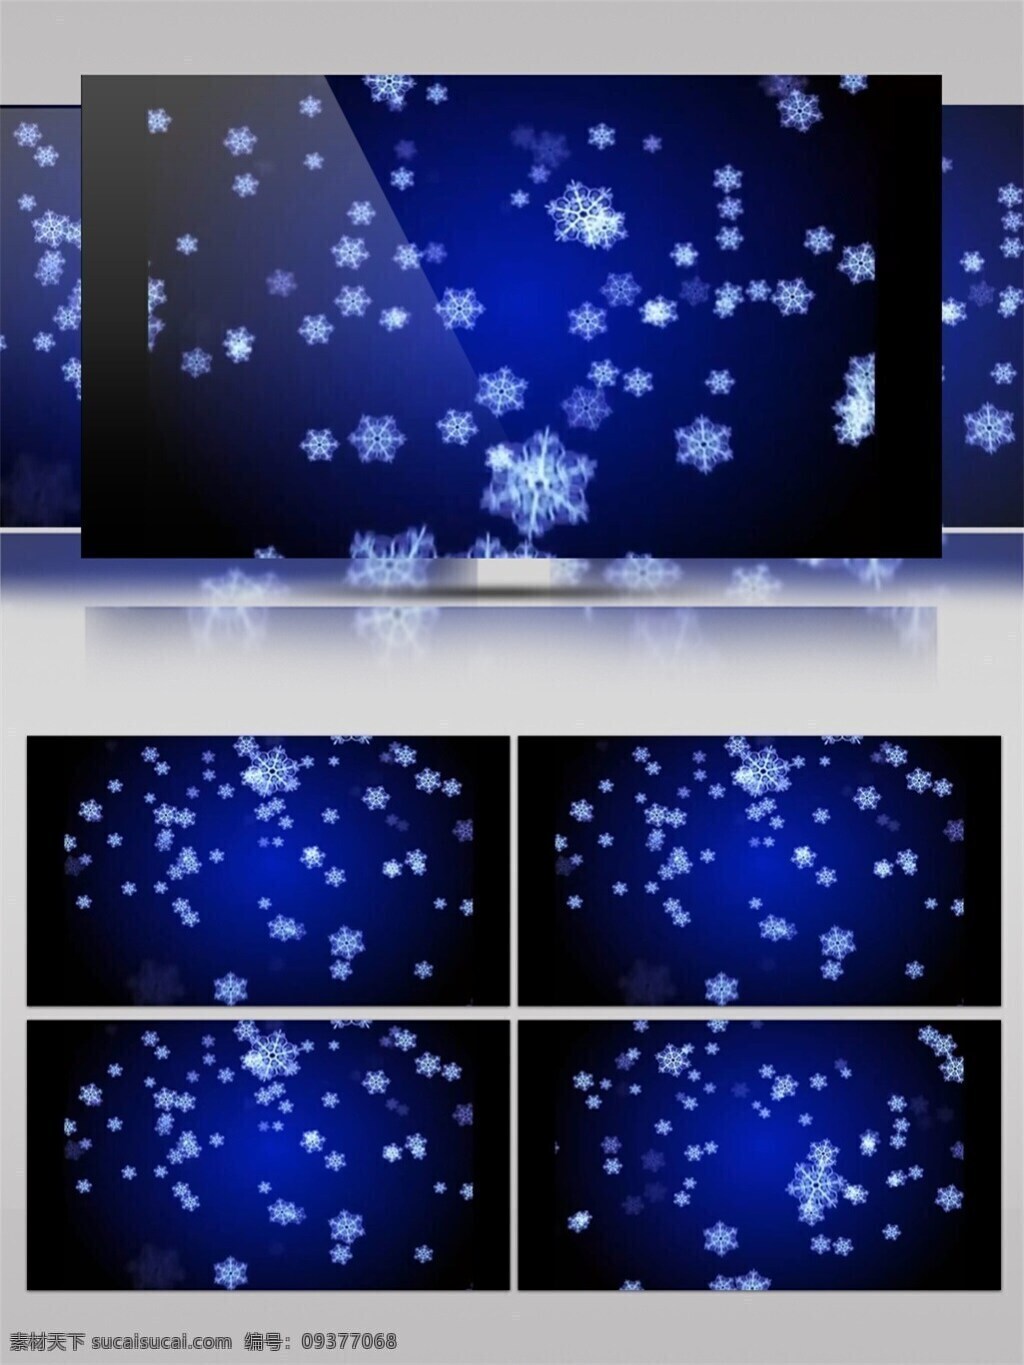 蓝色 雪花 圣诞节 视频 白色雪花 节日壁纸 节日 特效 迷幻少女 夜色星空